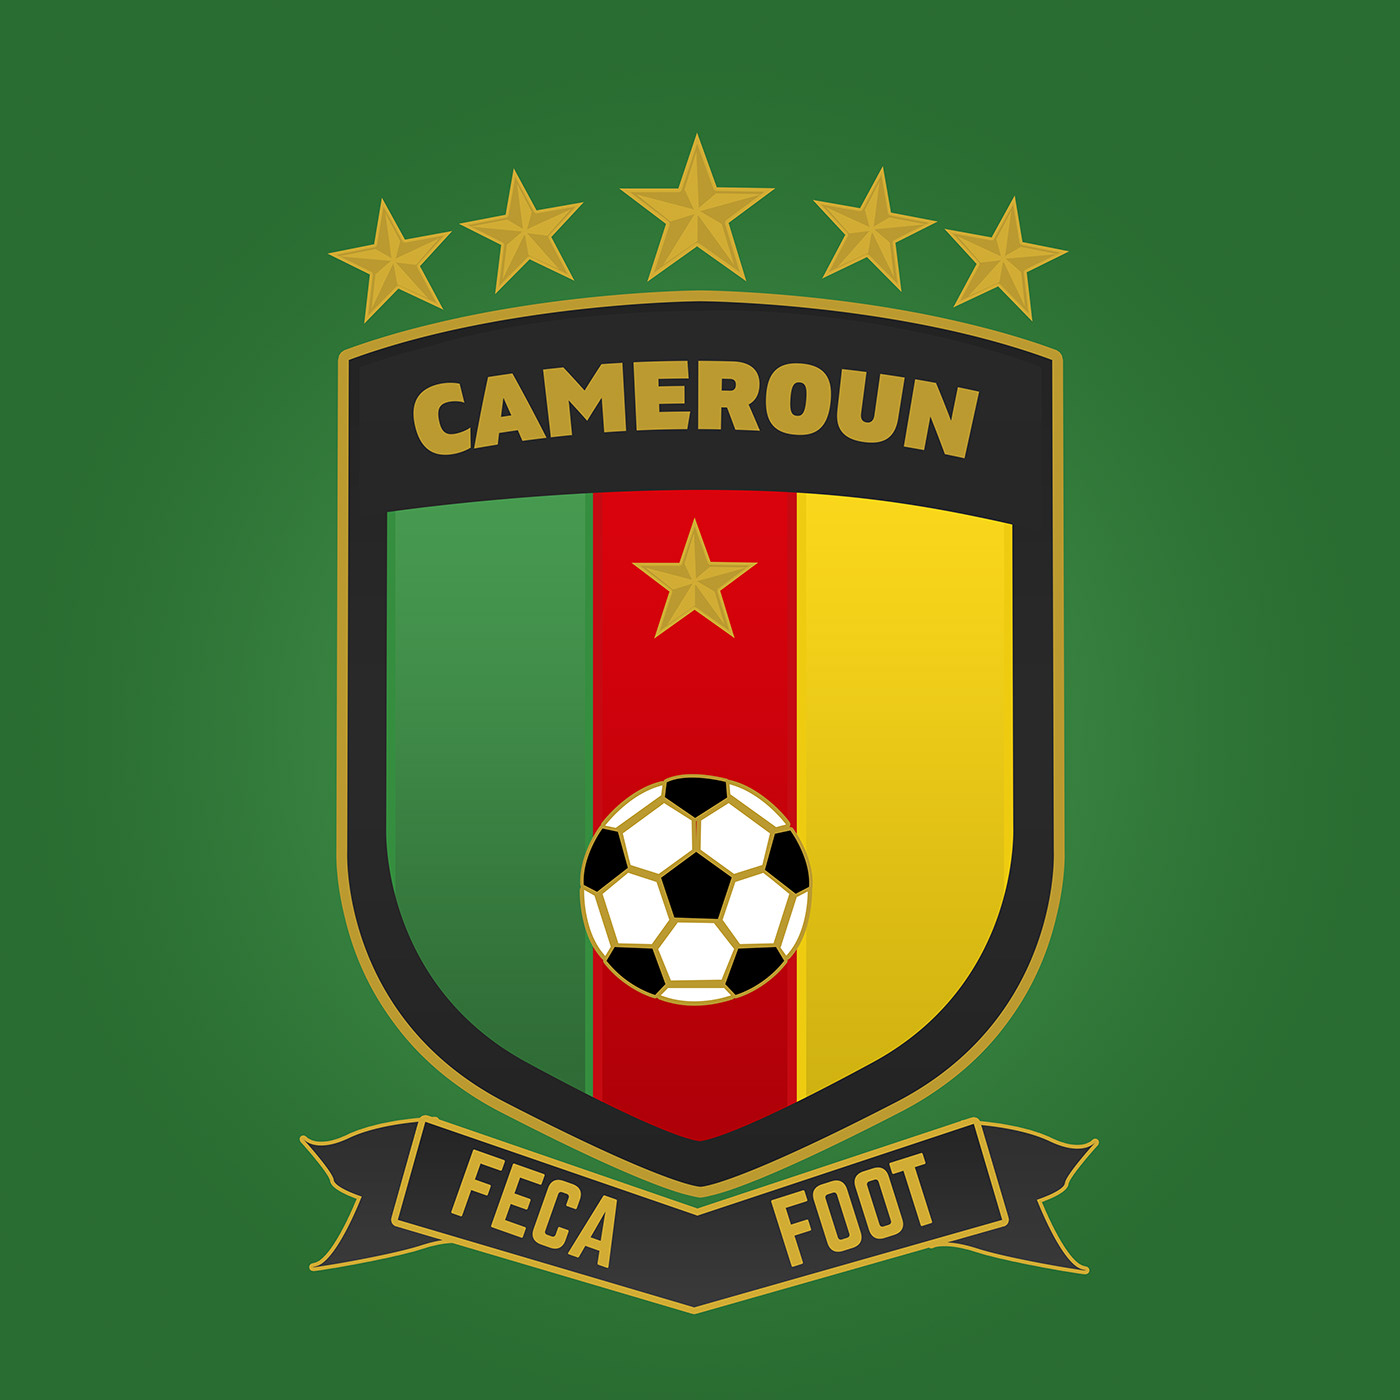 Feca Foot football branding  Footbaal Kits jersey Afcon 2019